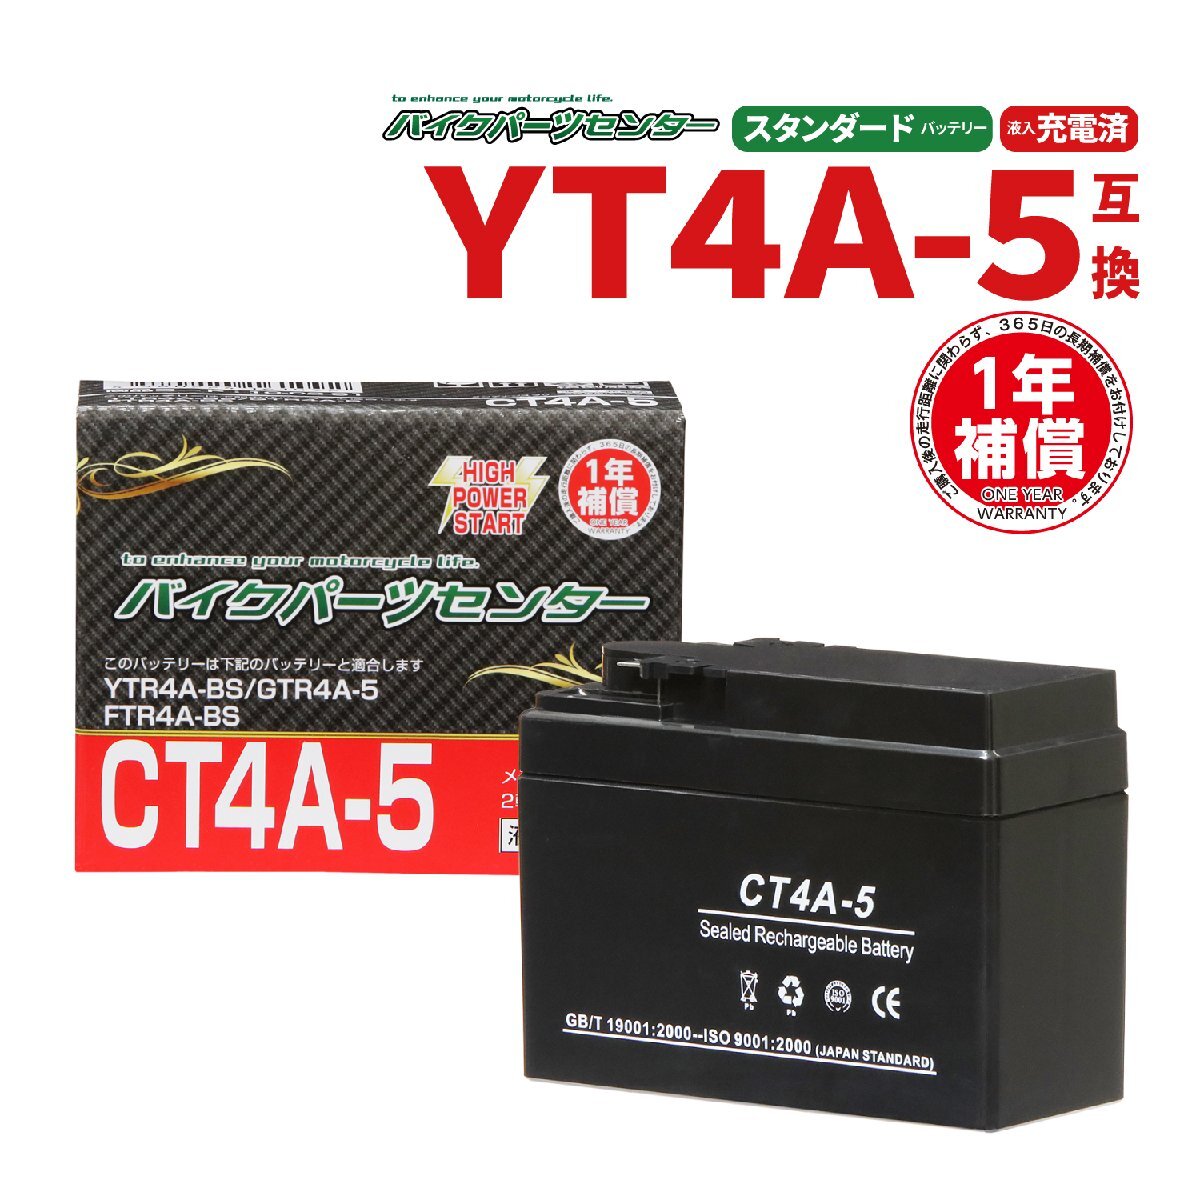 バイクパーツセンター NBS CT4A-5 液入充電済 バッテリー YT4A-5 YTR4A-BS GT4A-5 互換 1年間保証付 新品の画像1